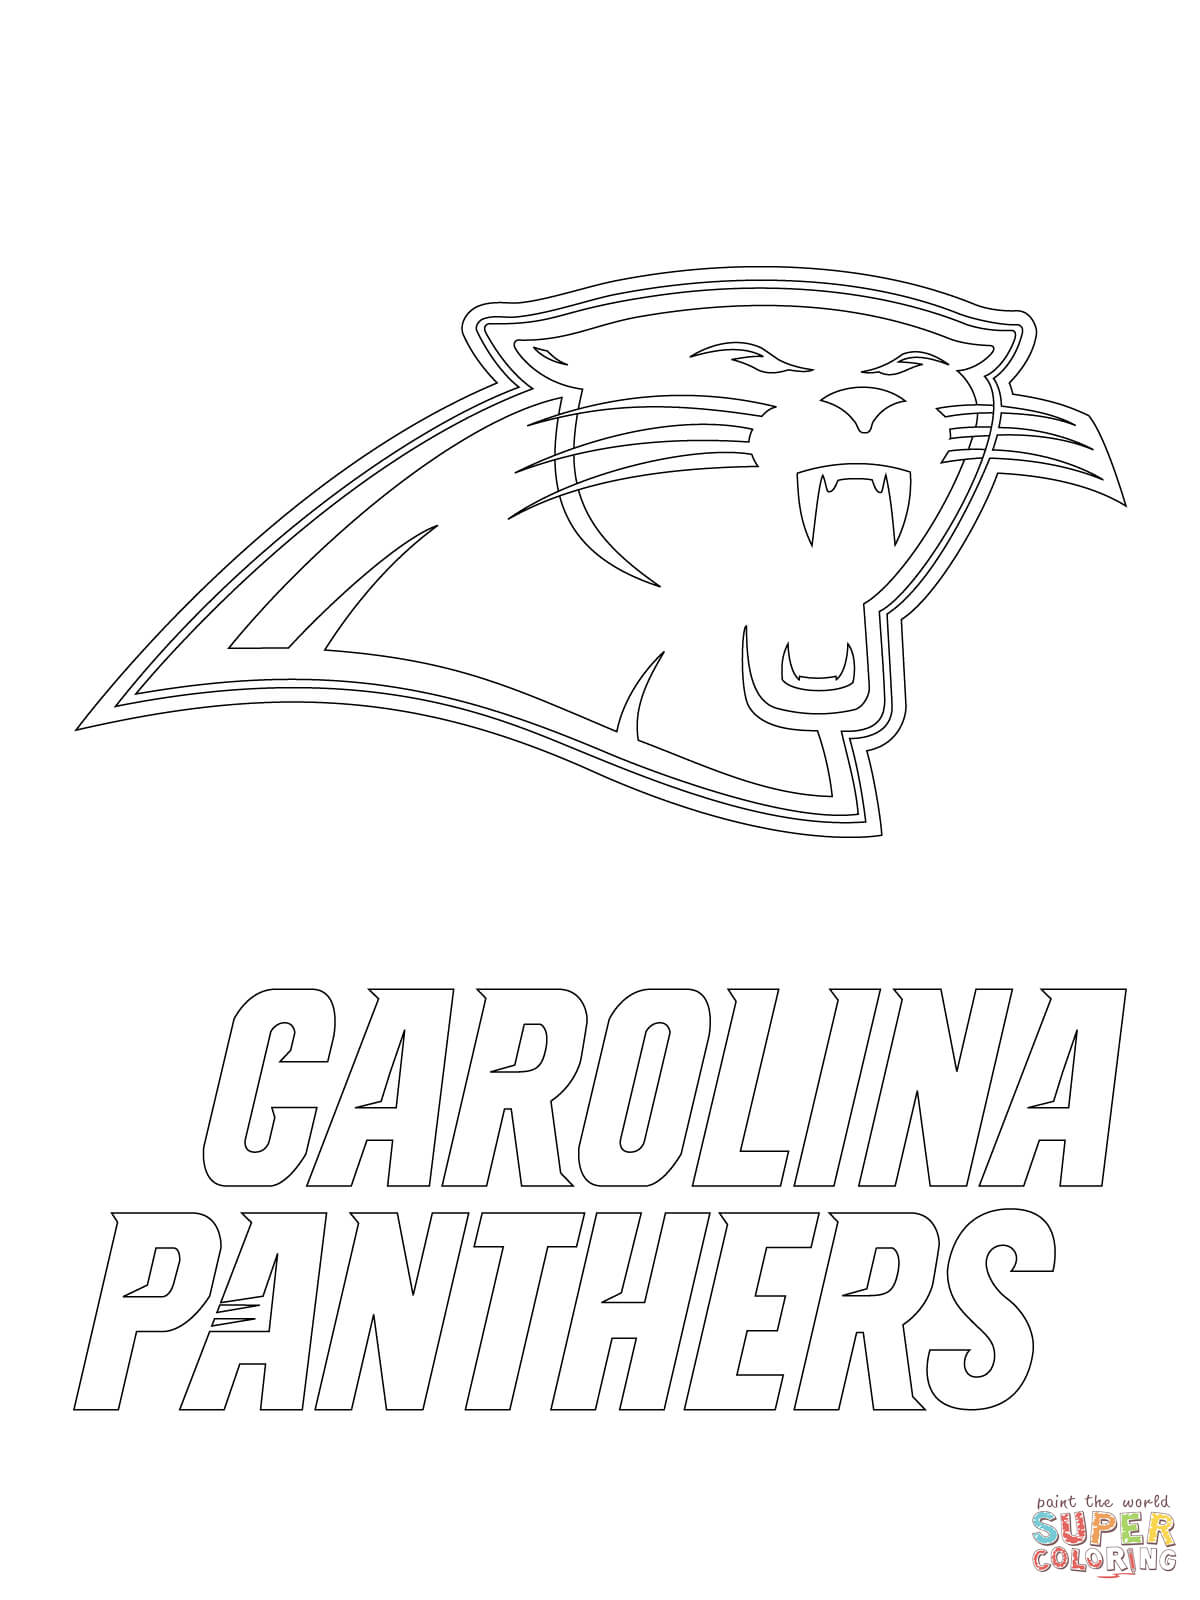 8 Pics of Florida Panthers Logo Coloring Page - Carolina Panthers ...